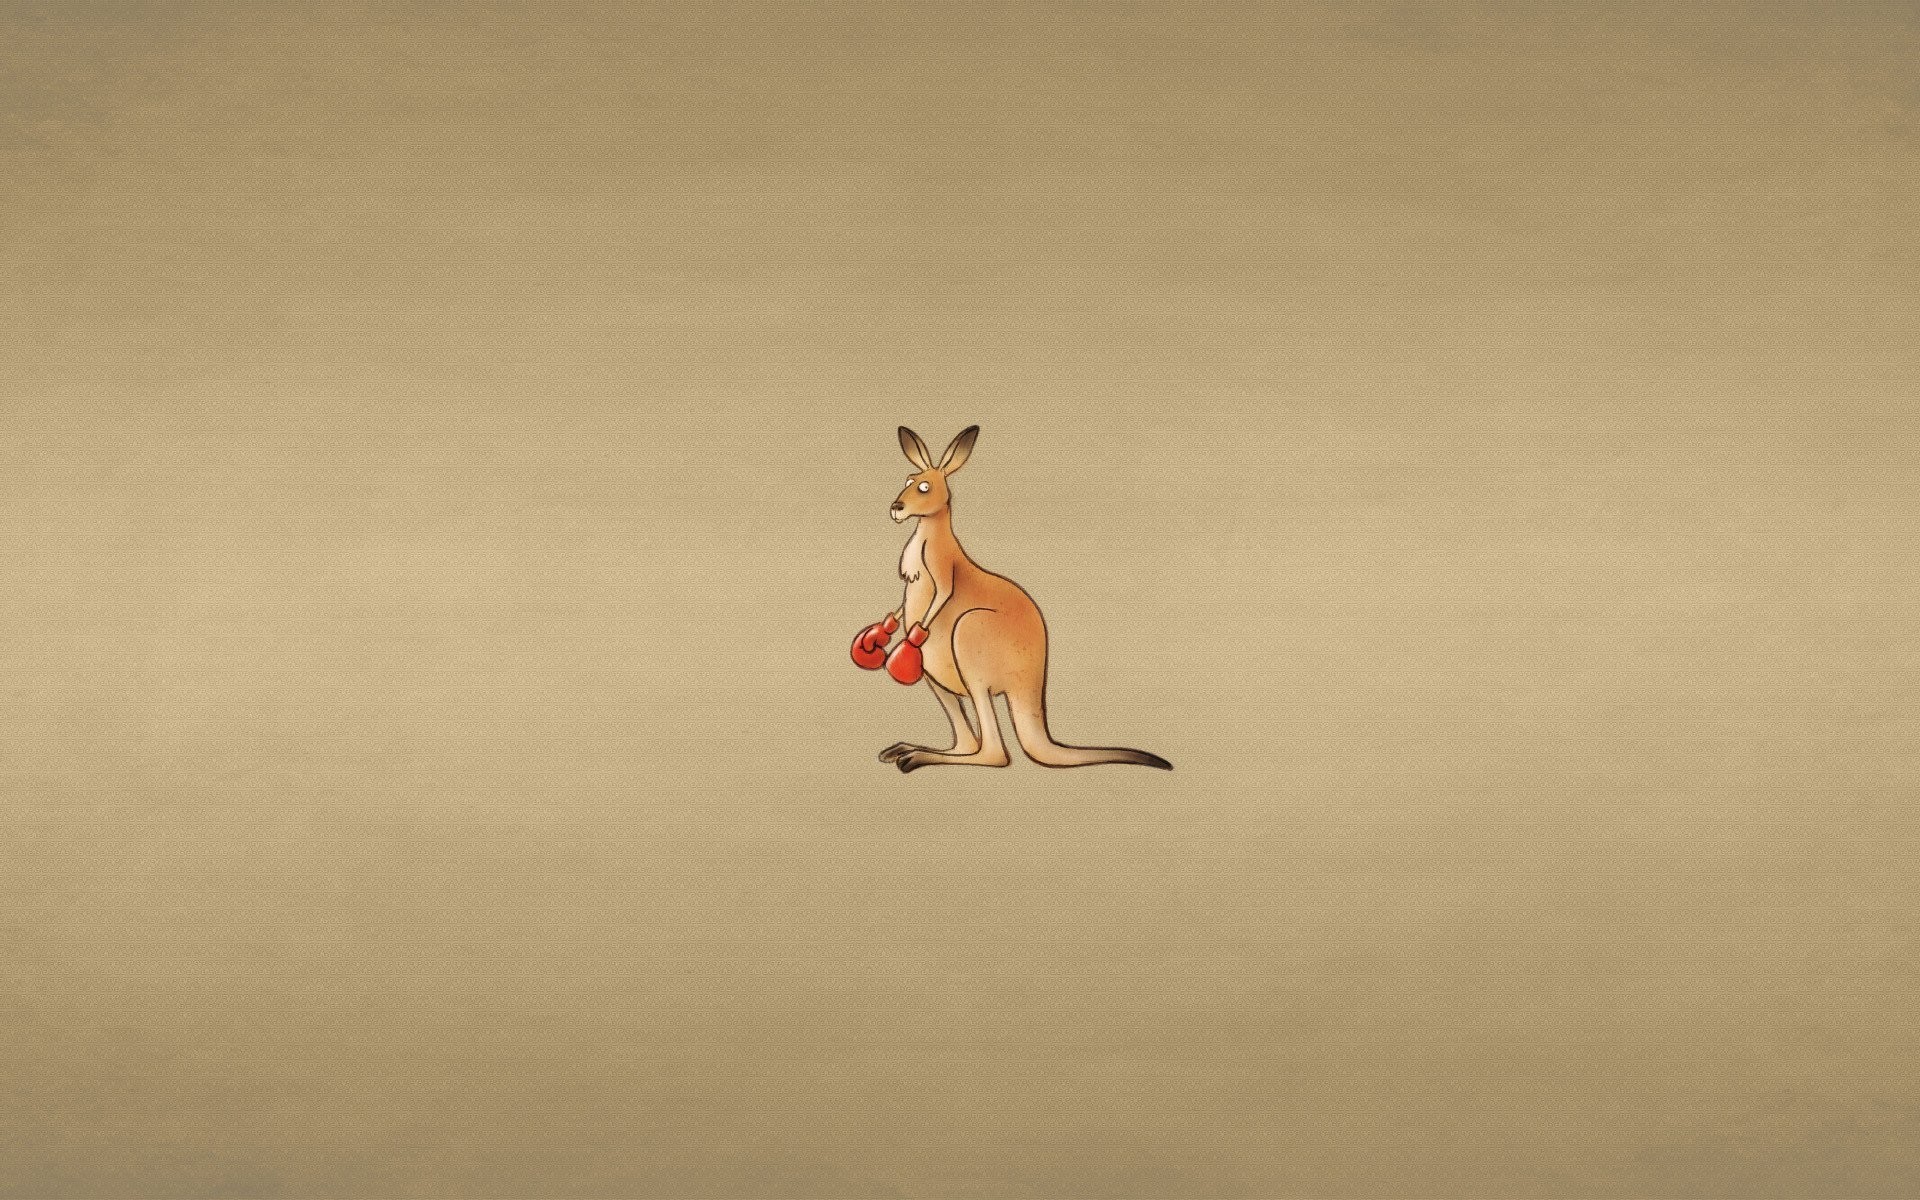 1920x1200 kangaroo kangaroo boxing gloves dusky background penetrating glance  minimalism animals